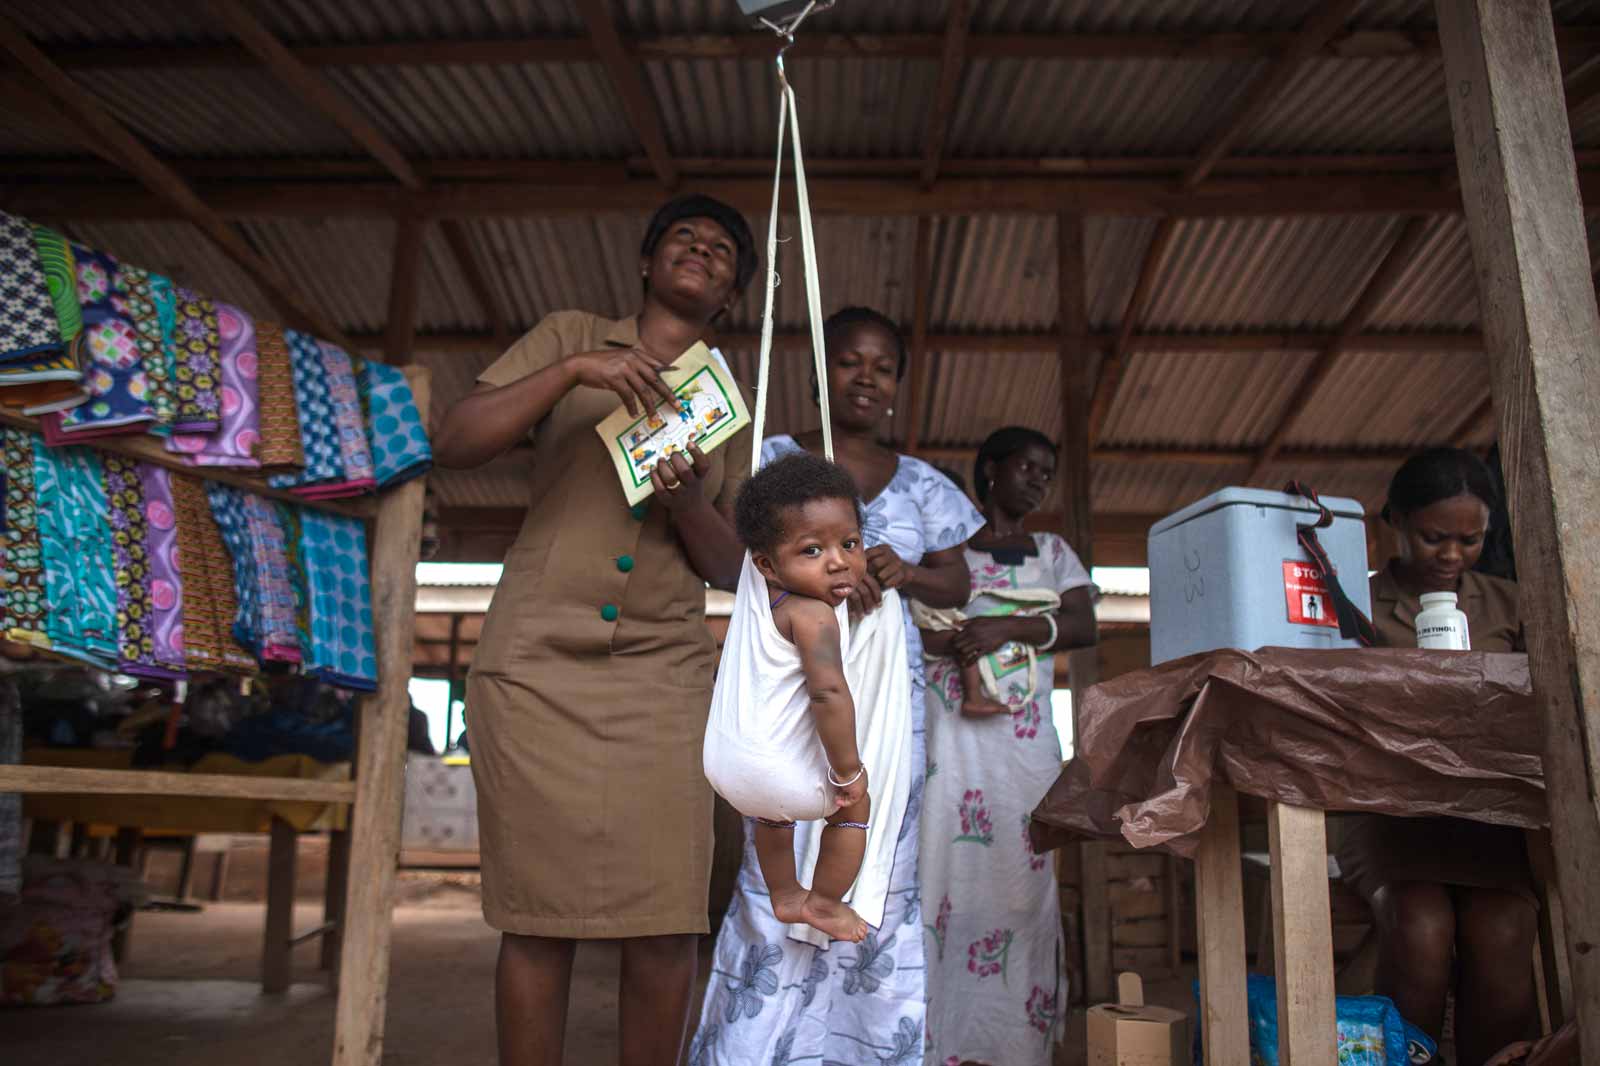   Au dispensaire installé sur un étal vide de marché, l’agent de santé communautaire Mavis Adjetey pèse les bébés avant d’administrer les vaccins. En 2012, le Ghana est devenu le premier pays d’Afrique à introduire simultanément des vaccins contre la pneumococcie et le rotavirus, ciblant ainsi les premières causes de mortalité dans le monde : la pneumonie et la diarrhée.